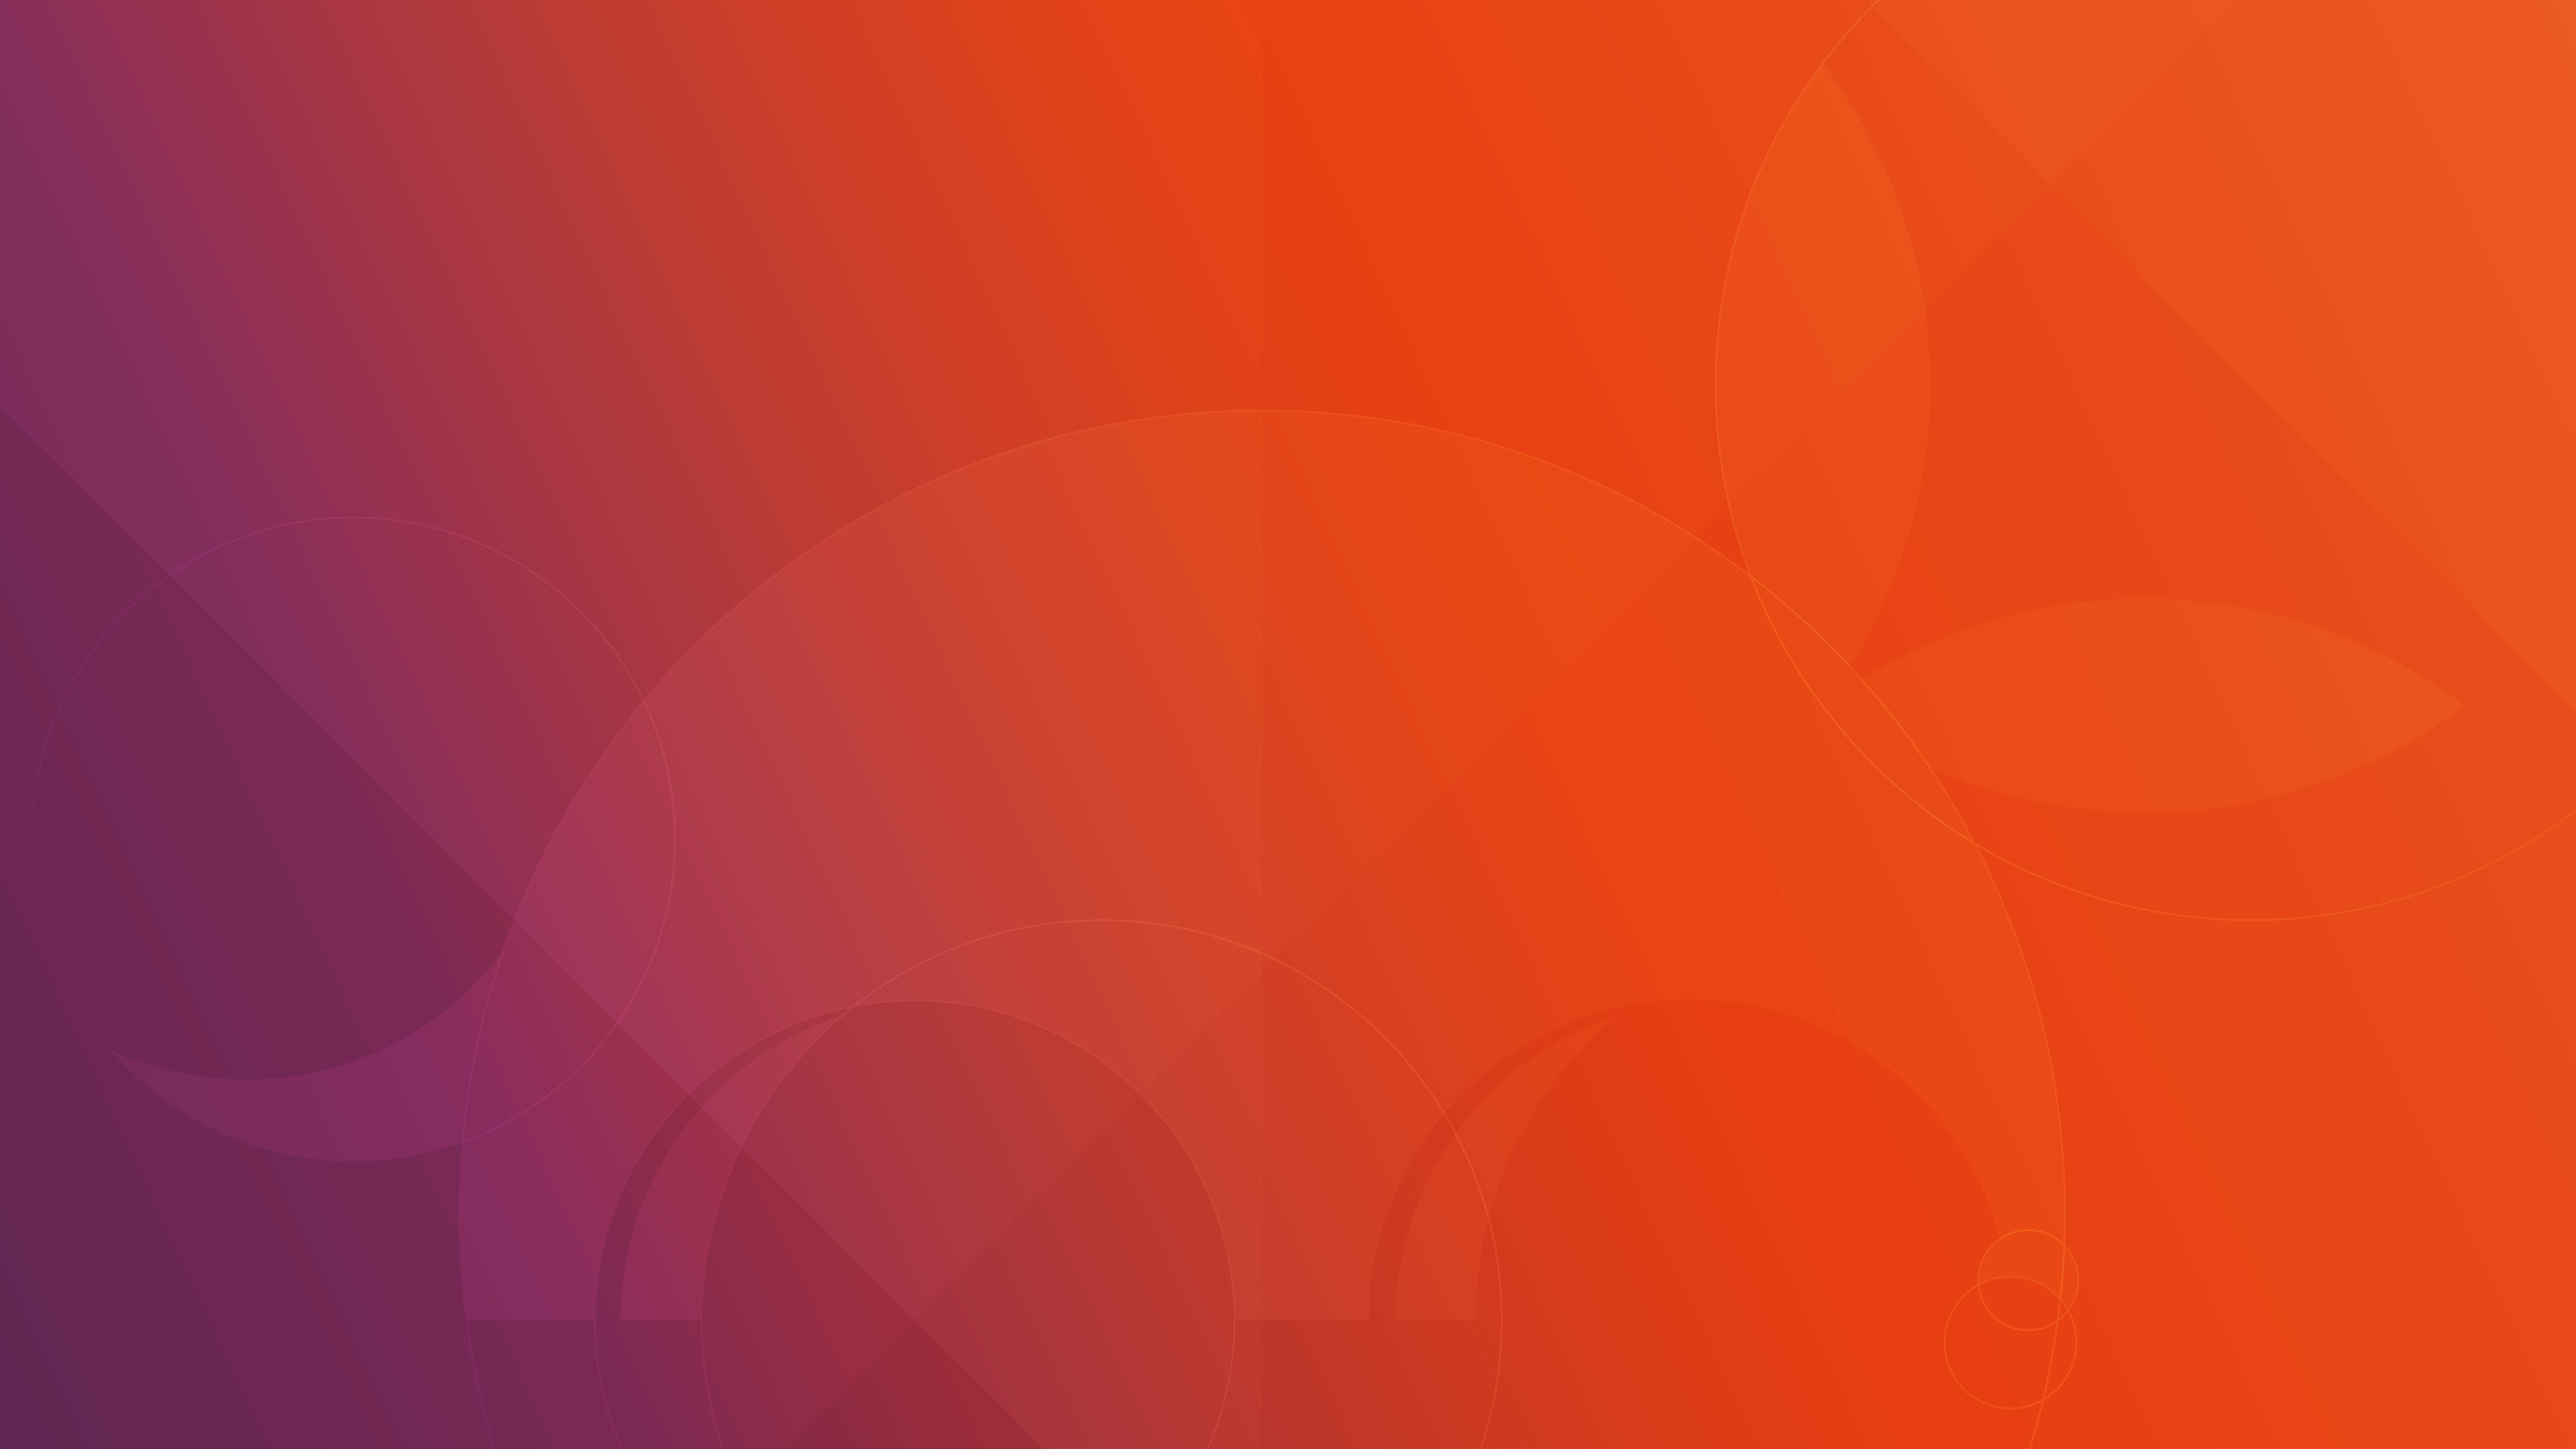 Ubuntu Wallpaper 17.10 - HD Wallpaper 